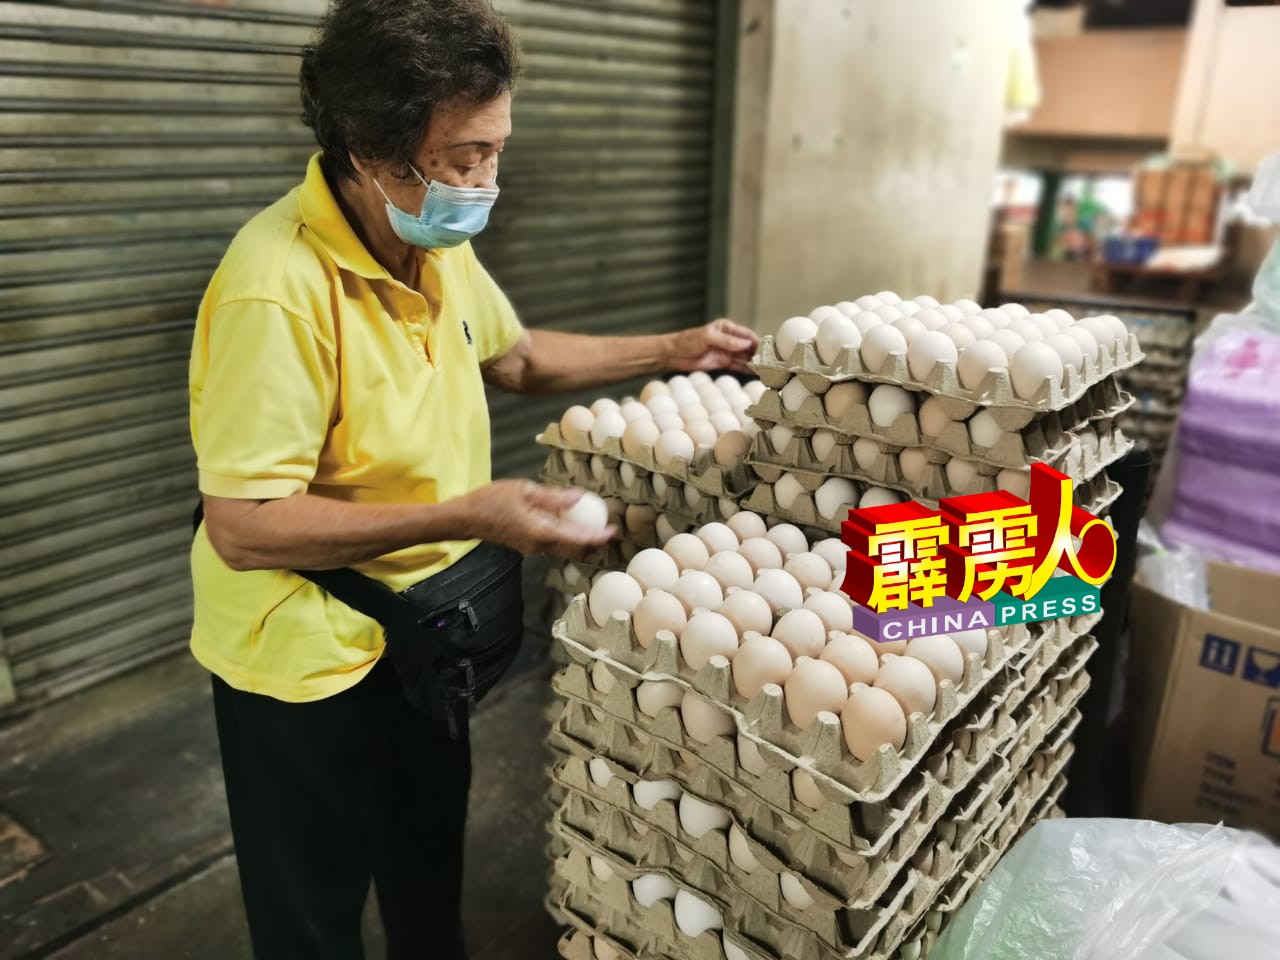 曾秀梅亲到鸡蛋批发店选购菜园鸡蛋供售卖给顾客。